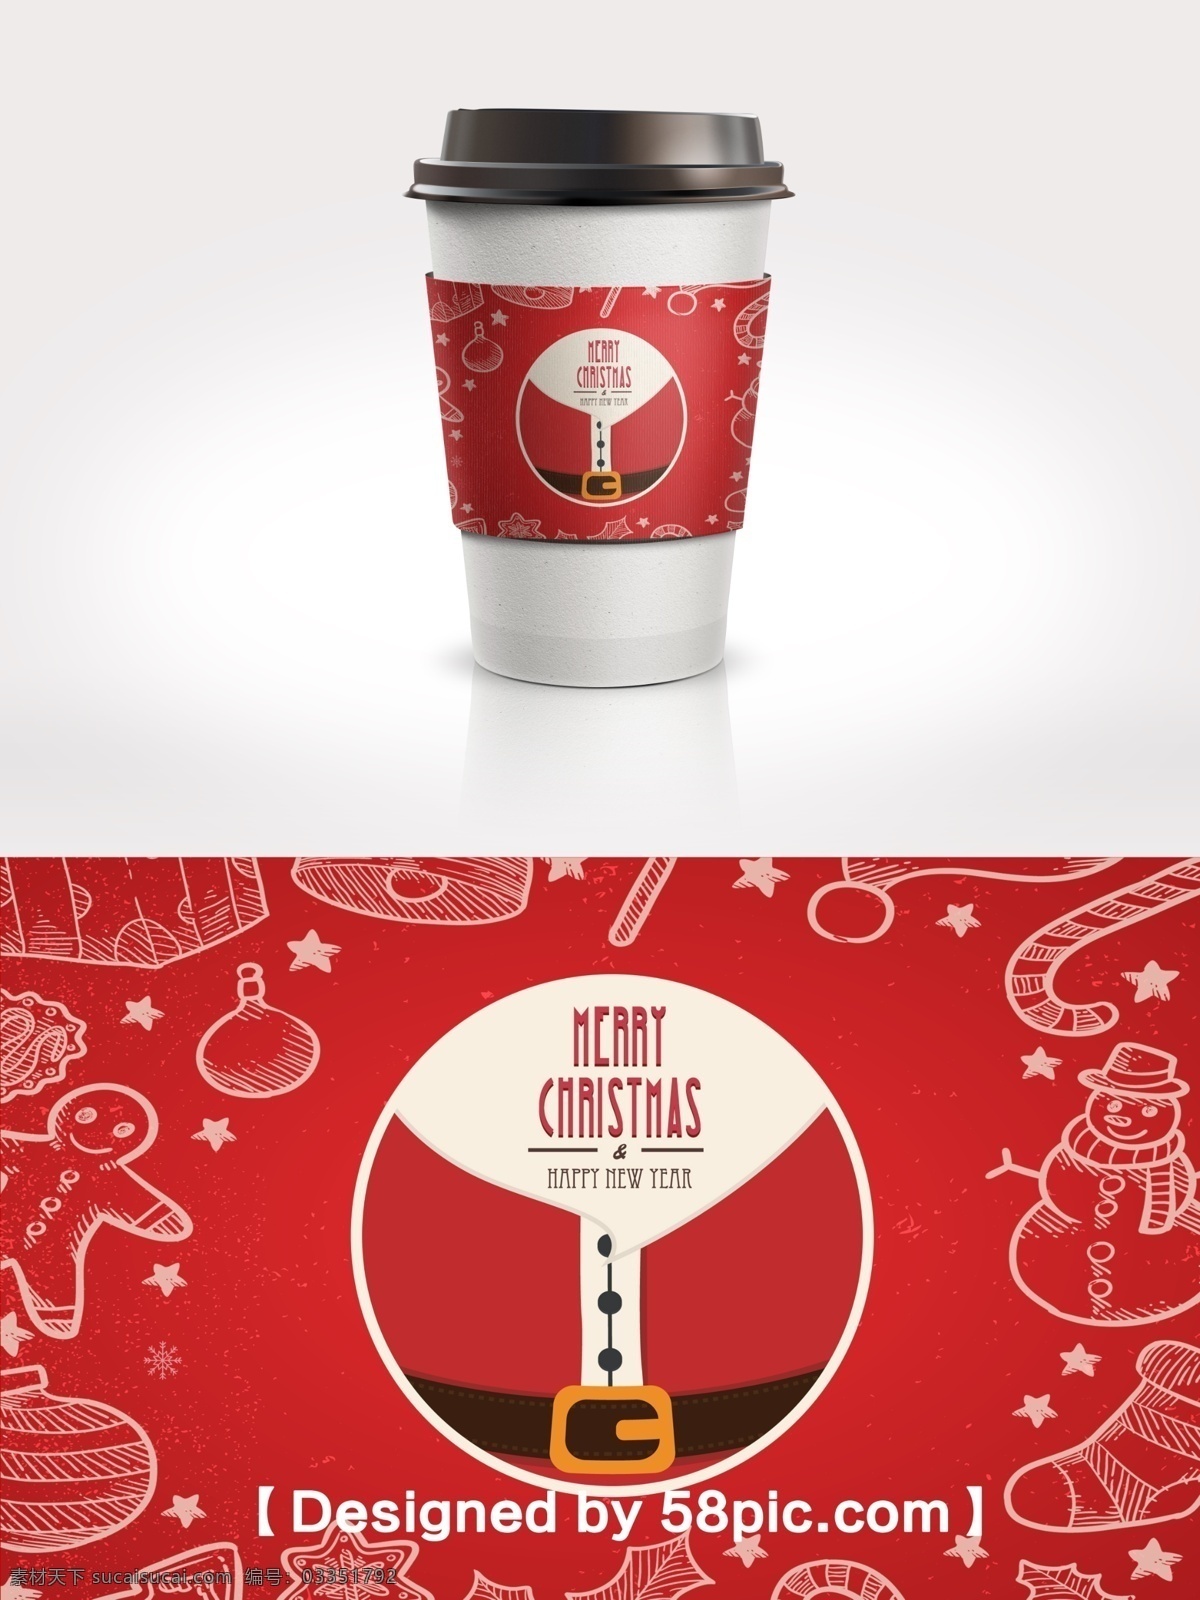 简约 红色 圣诞节 节日 包装 咖啡杯 套 简约大气 psd素材 咖啡杯杯套 圣诞老人 广告设计模版 圣诞元素 节日包装